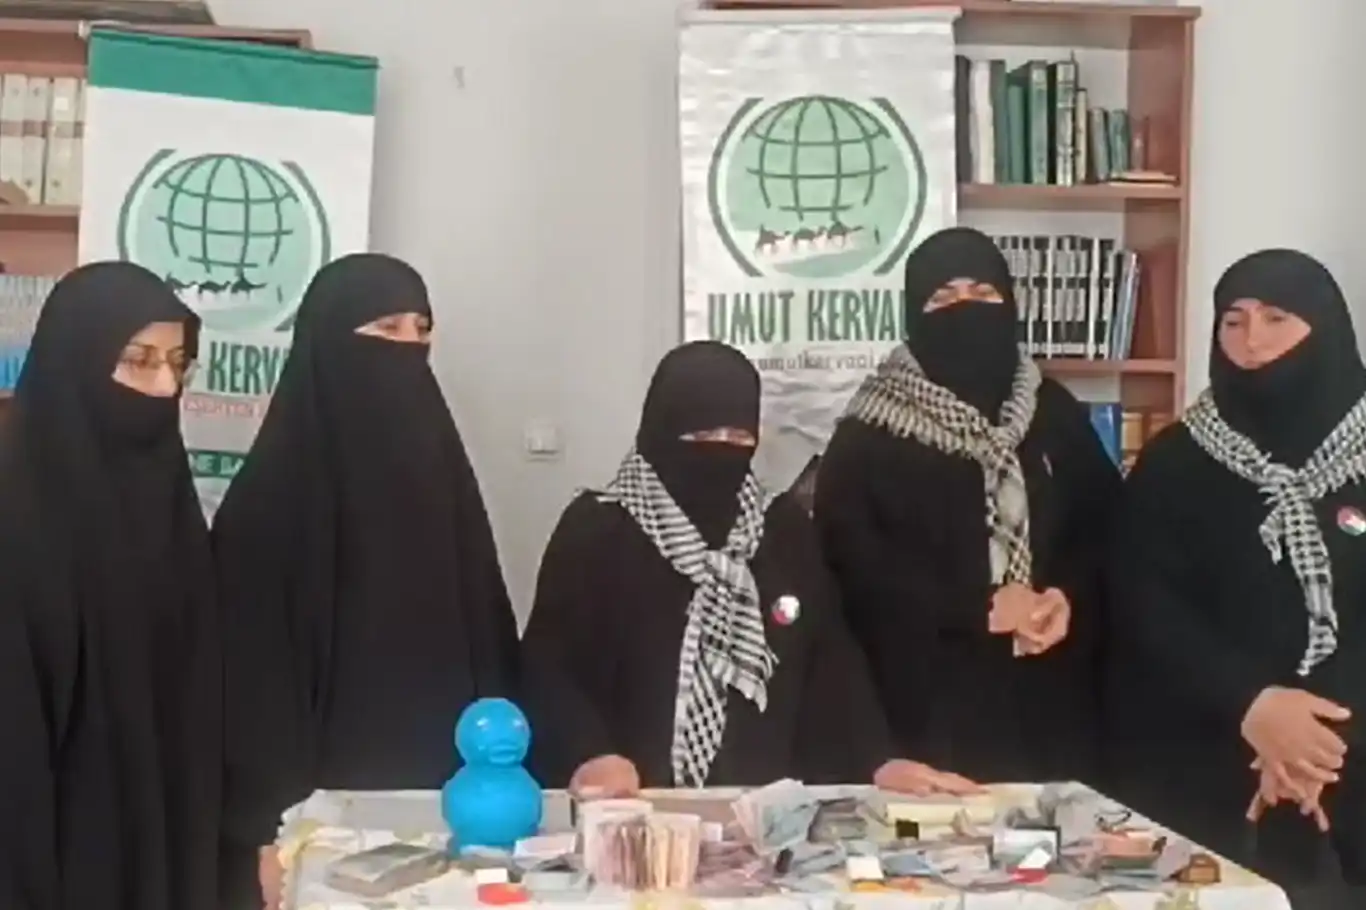 Ercişli kadınlar ziynet eşyalarını Gazze'ye bağışladı